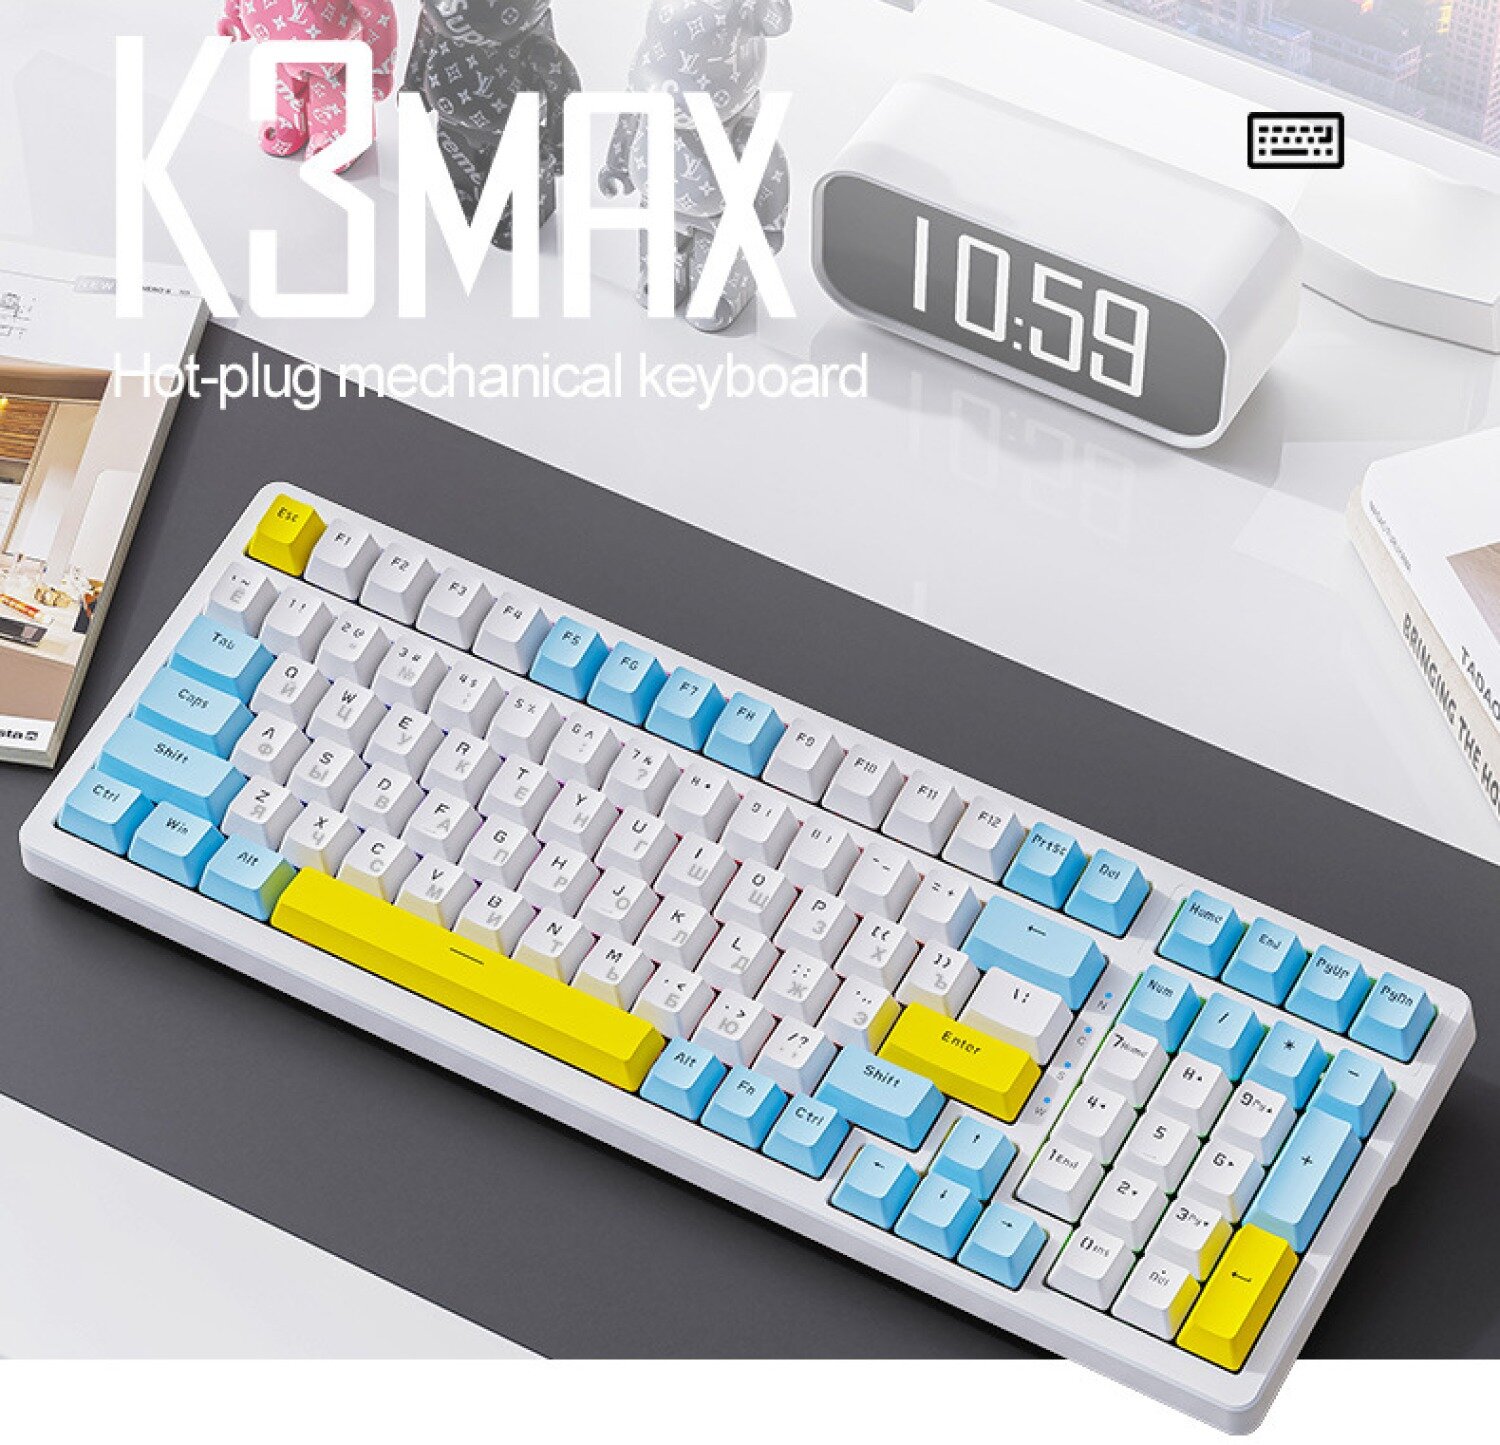 Клавиатура механическая русская Wolf K3 MAX с подсветкой + Hot Swap проводная для компьютера ноутбука Gaming/game keyboard usb светящаяся (голубой)